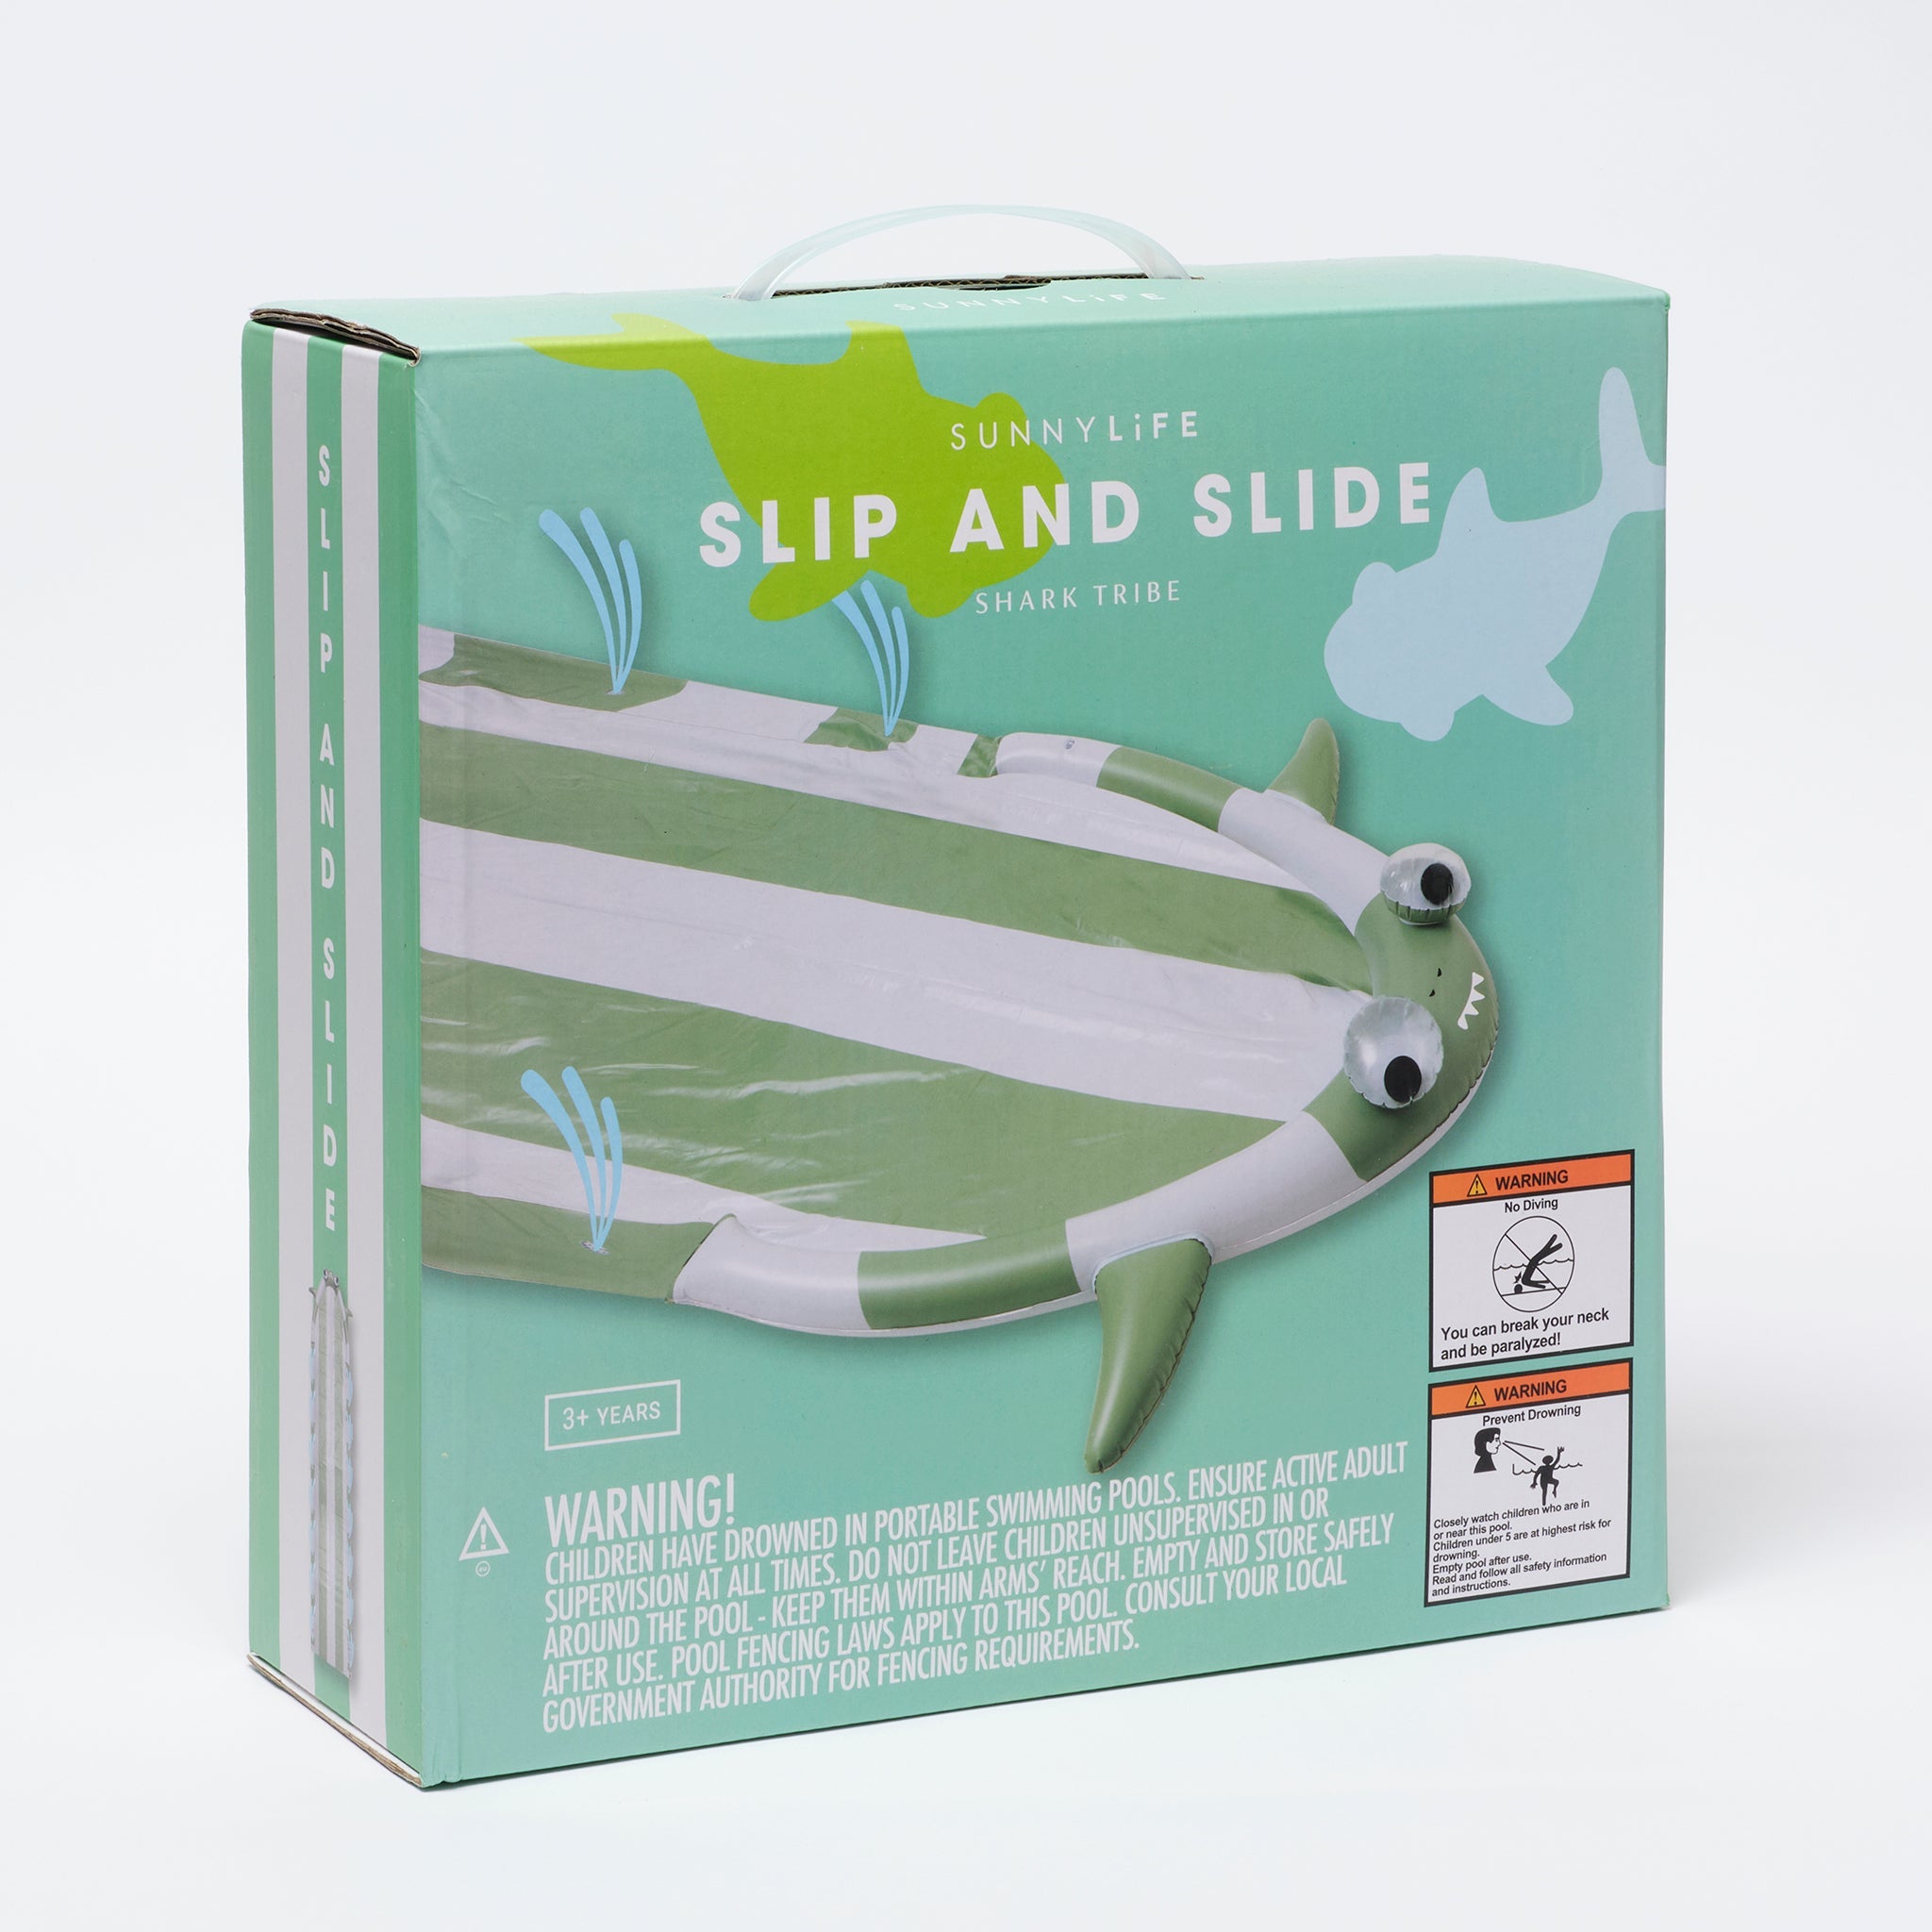 SUNNYLiFE | Slip and Slide | Shark Tribe